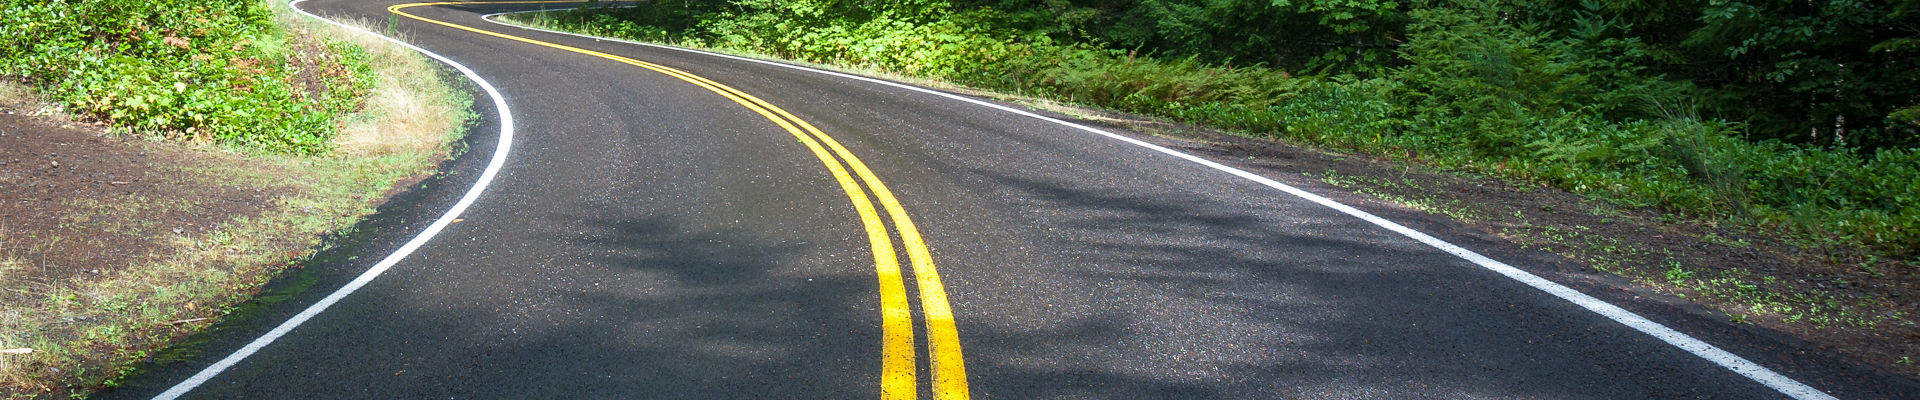 松林の真ん中に黄色の道路標示のある黒いアスファルト舗装